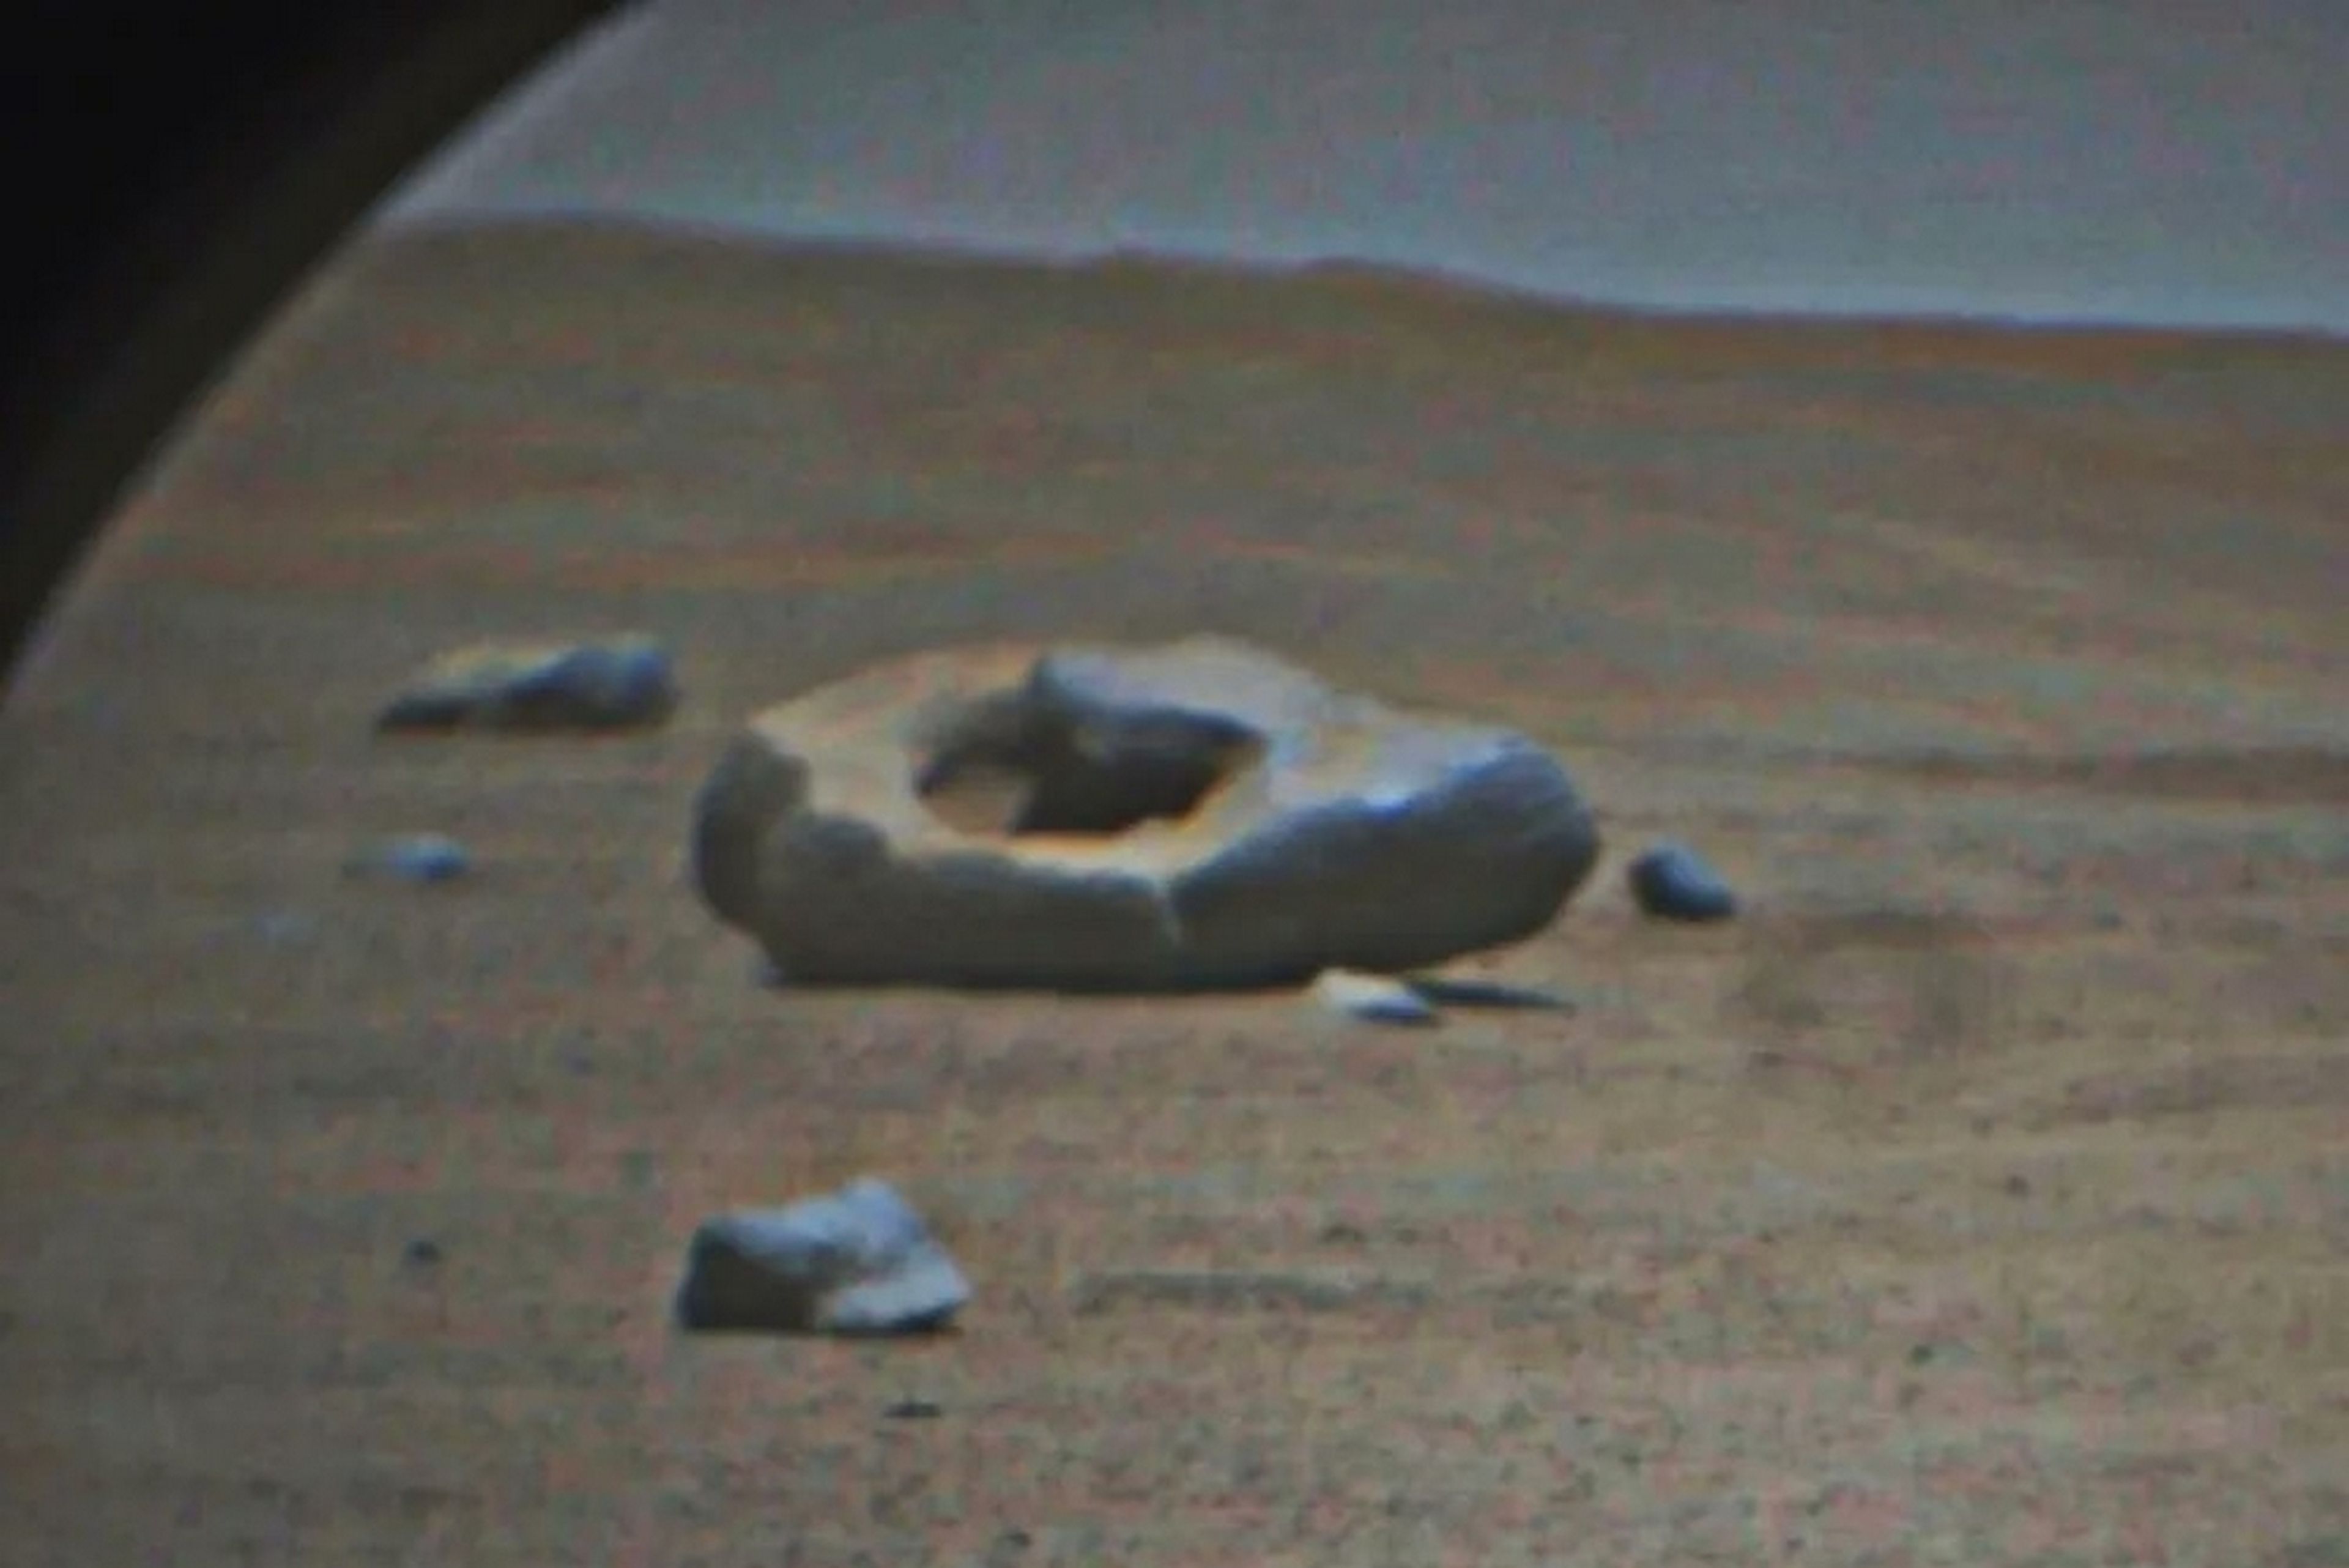 El rover Perseverance ha encontrado un "donut" en Marte, y los científicos intentan adivinar qué es